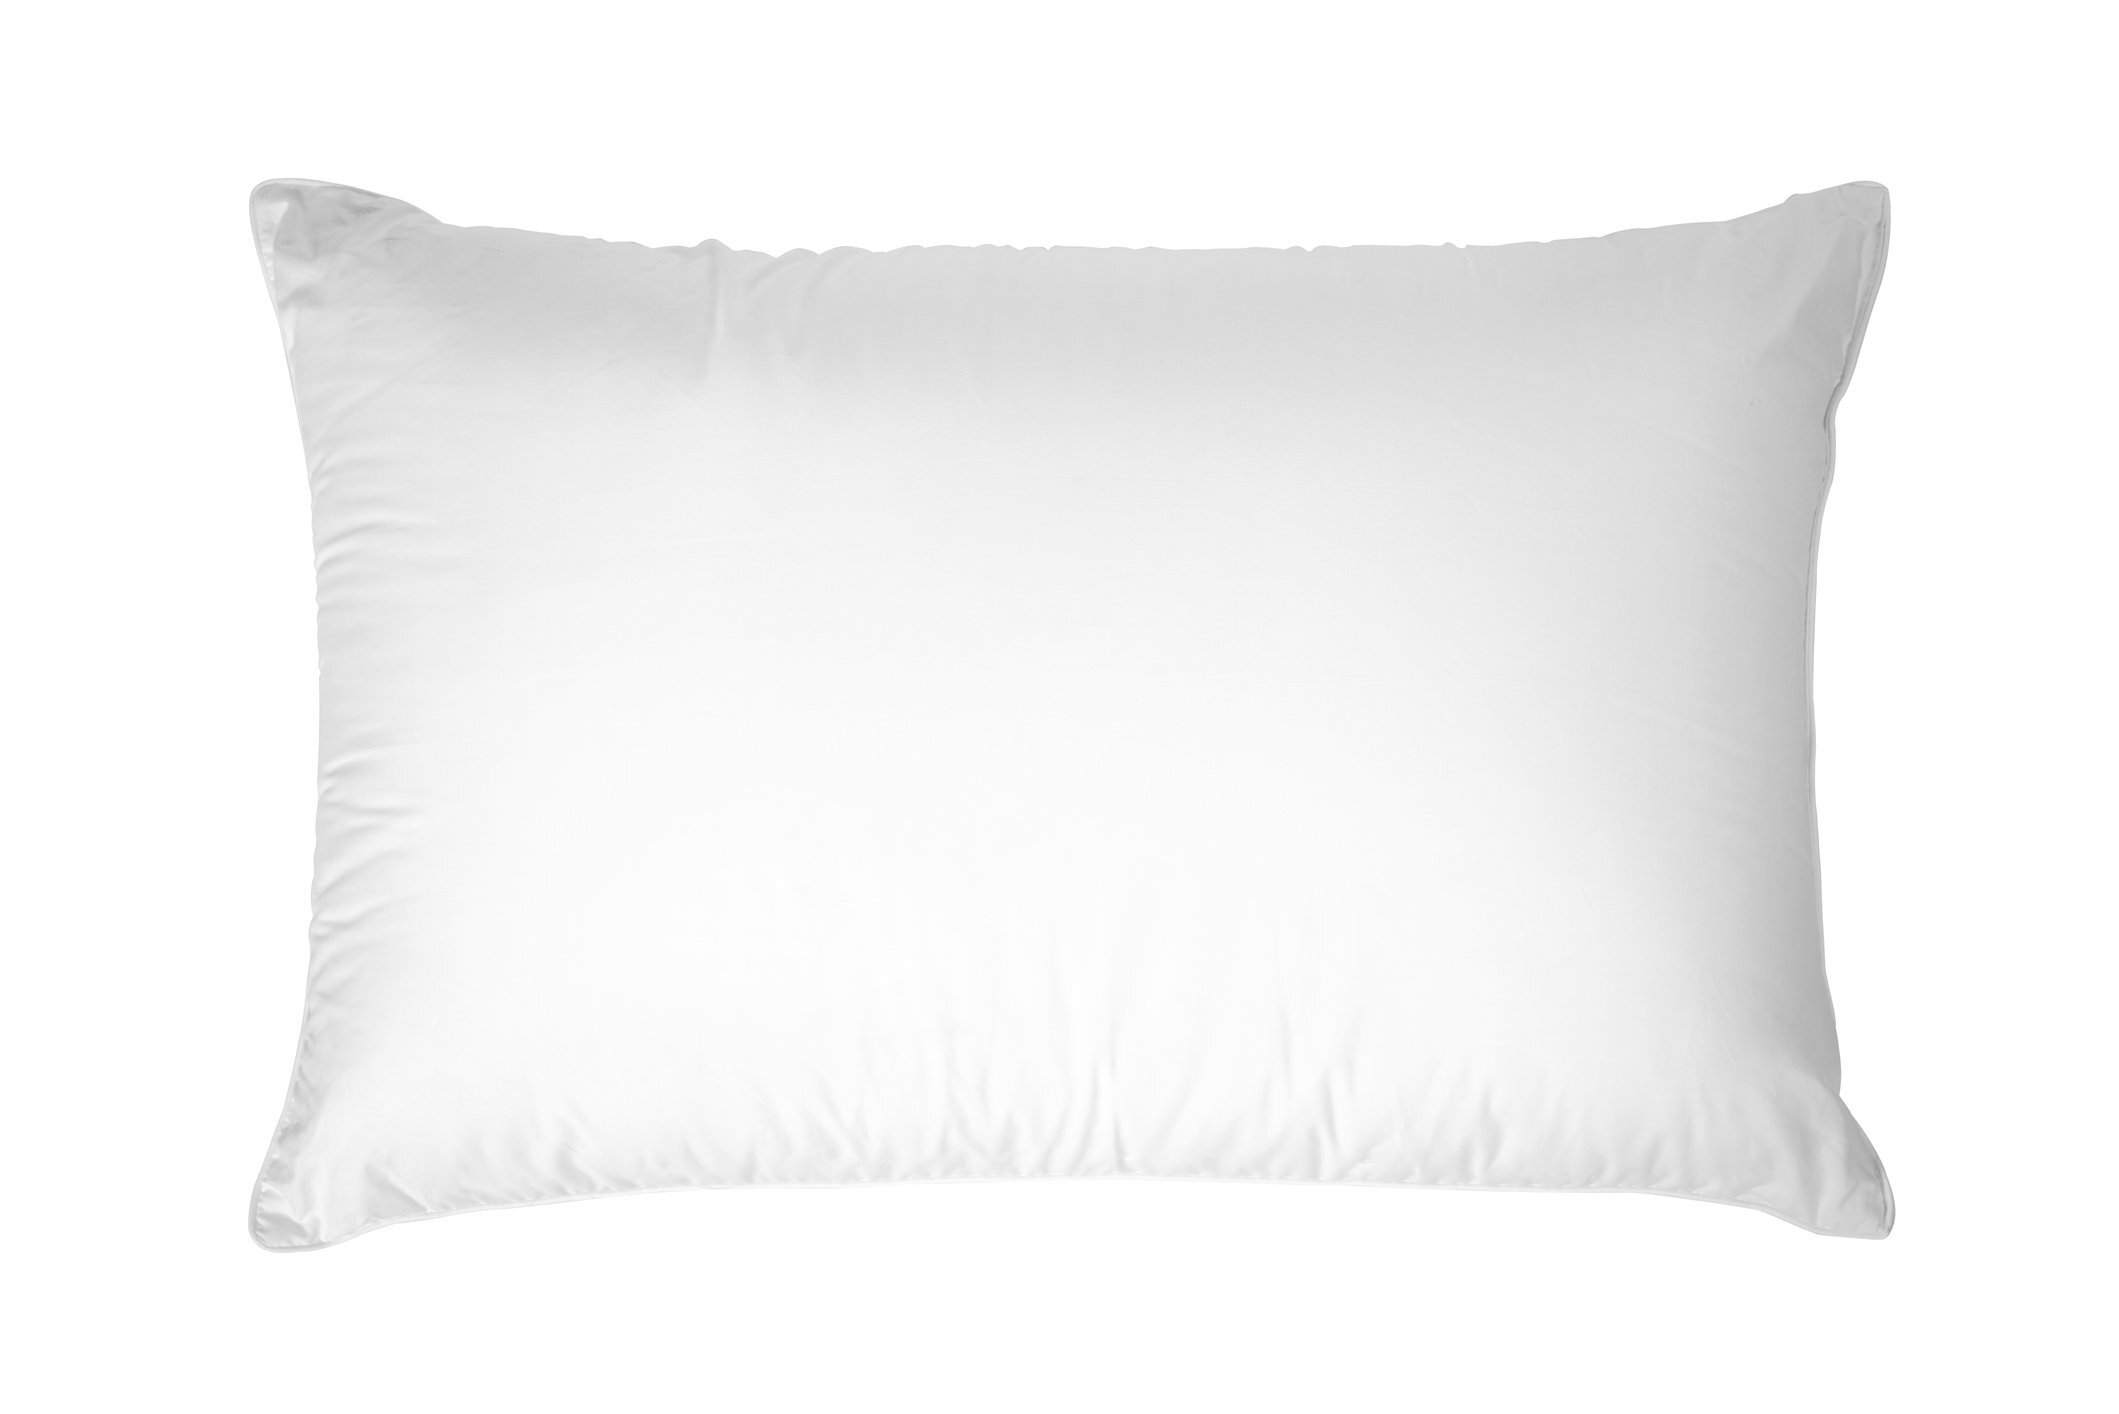 Envirosleep Dream Surrender Queen Pillow Set. 2 Pillows 